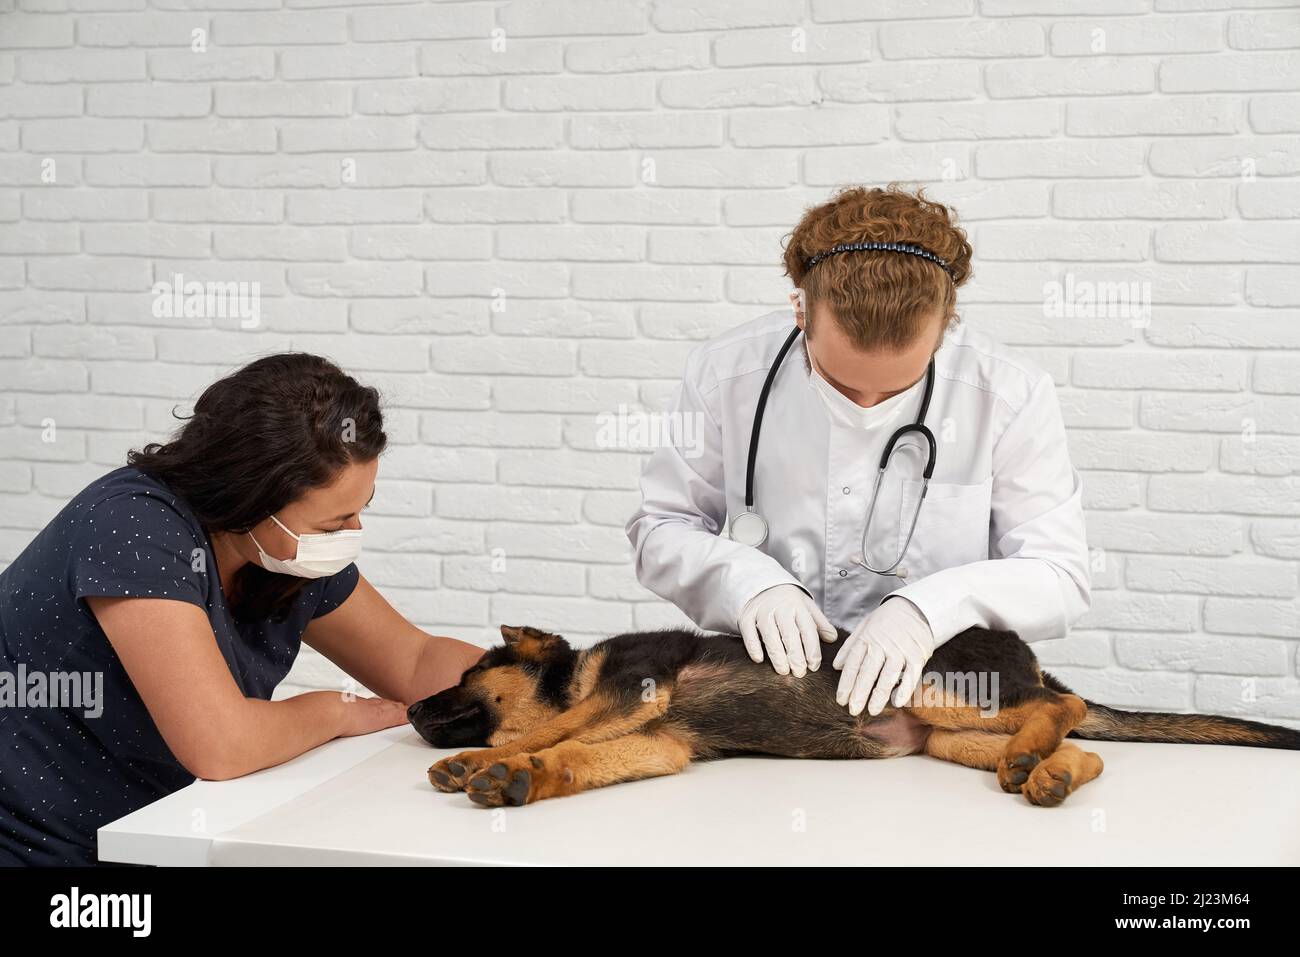 Vue de face du vétérinaire avec une infirmière examinant le Berger allemand dans la clinique vétérinaire. Médecin avec phonendoscope touchant le chien, animal allongé sur le côté dans la narcose. Concept de protection des animaux. Banque D'Images